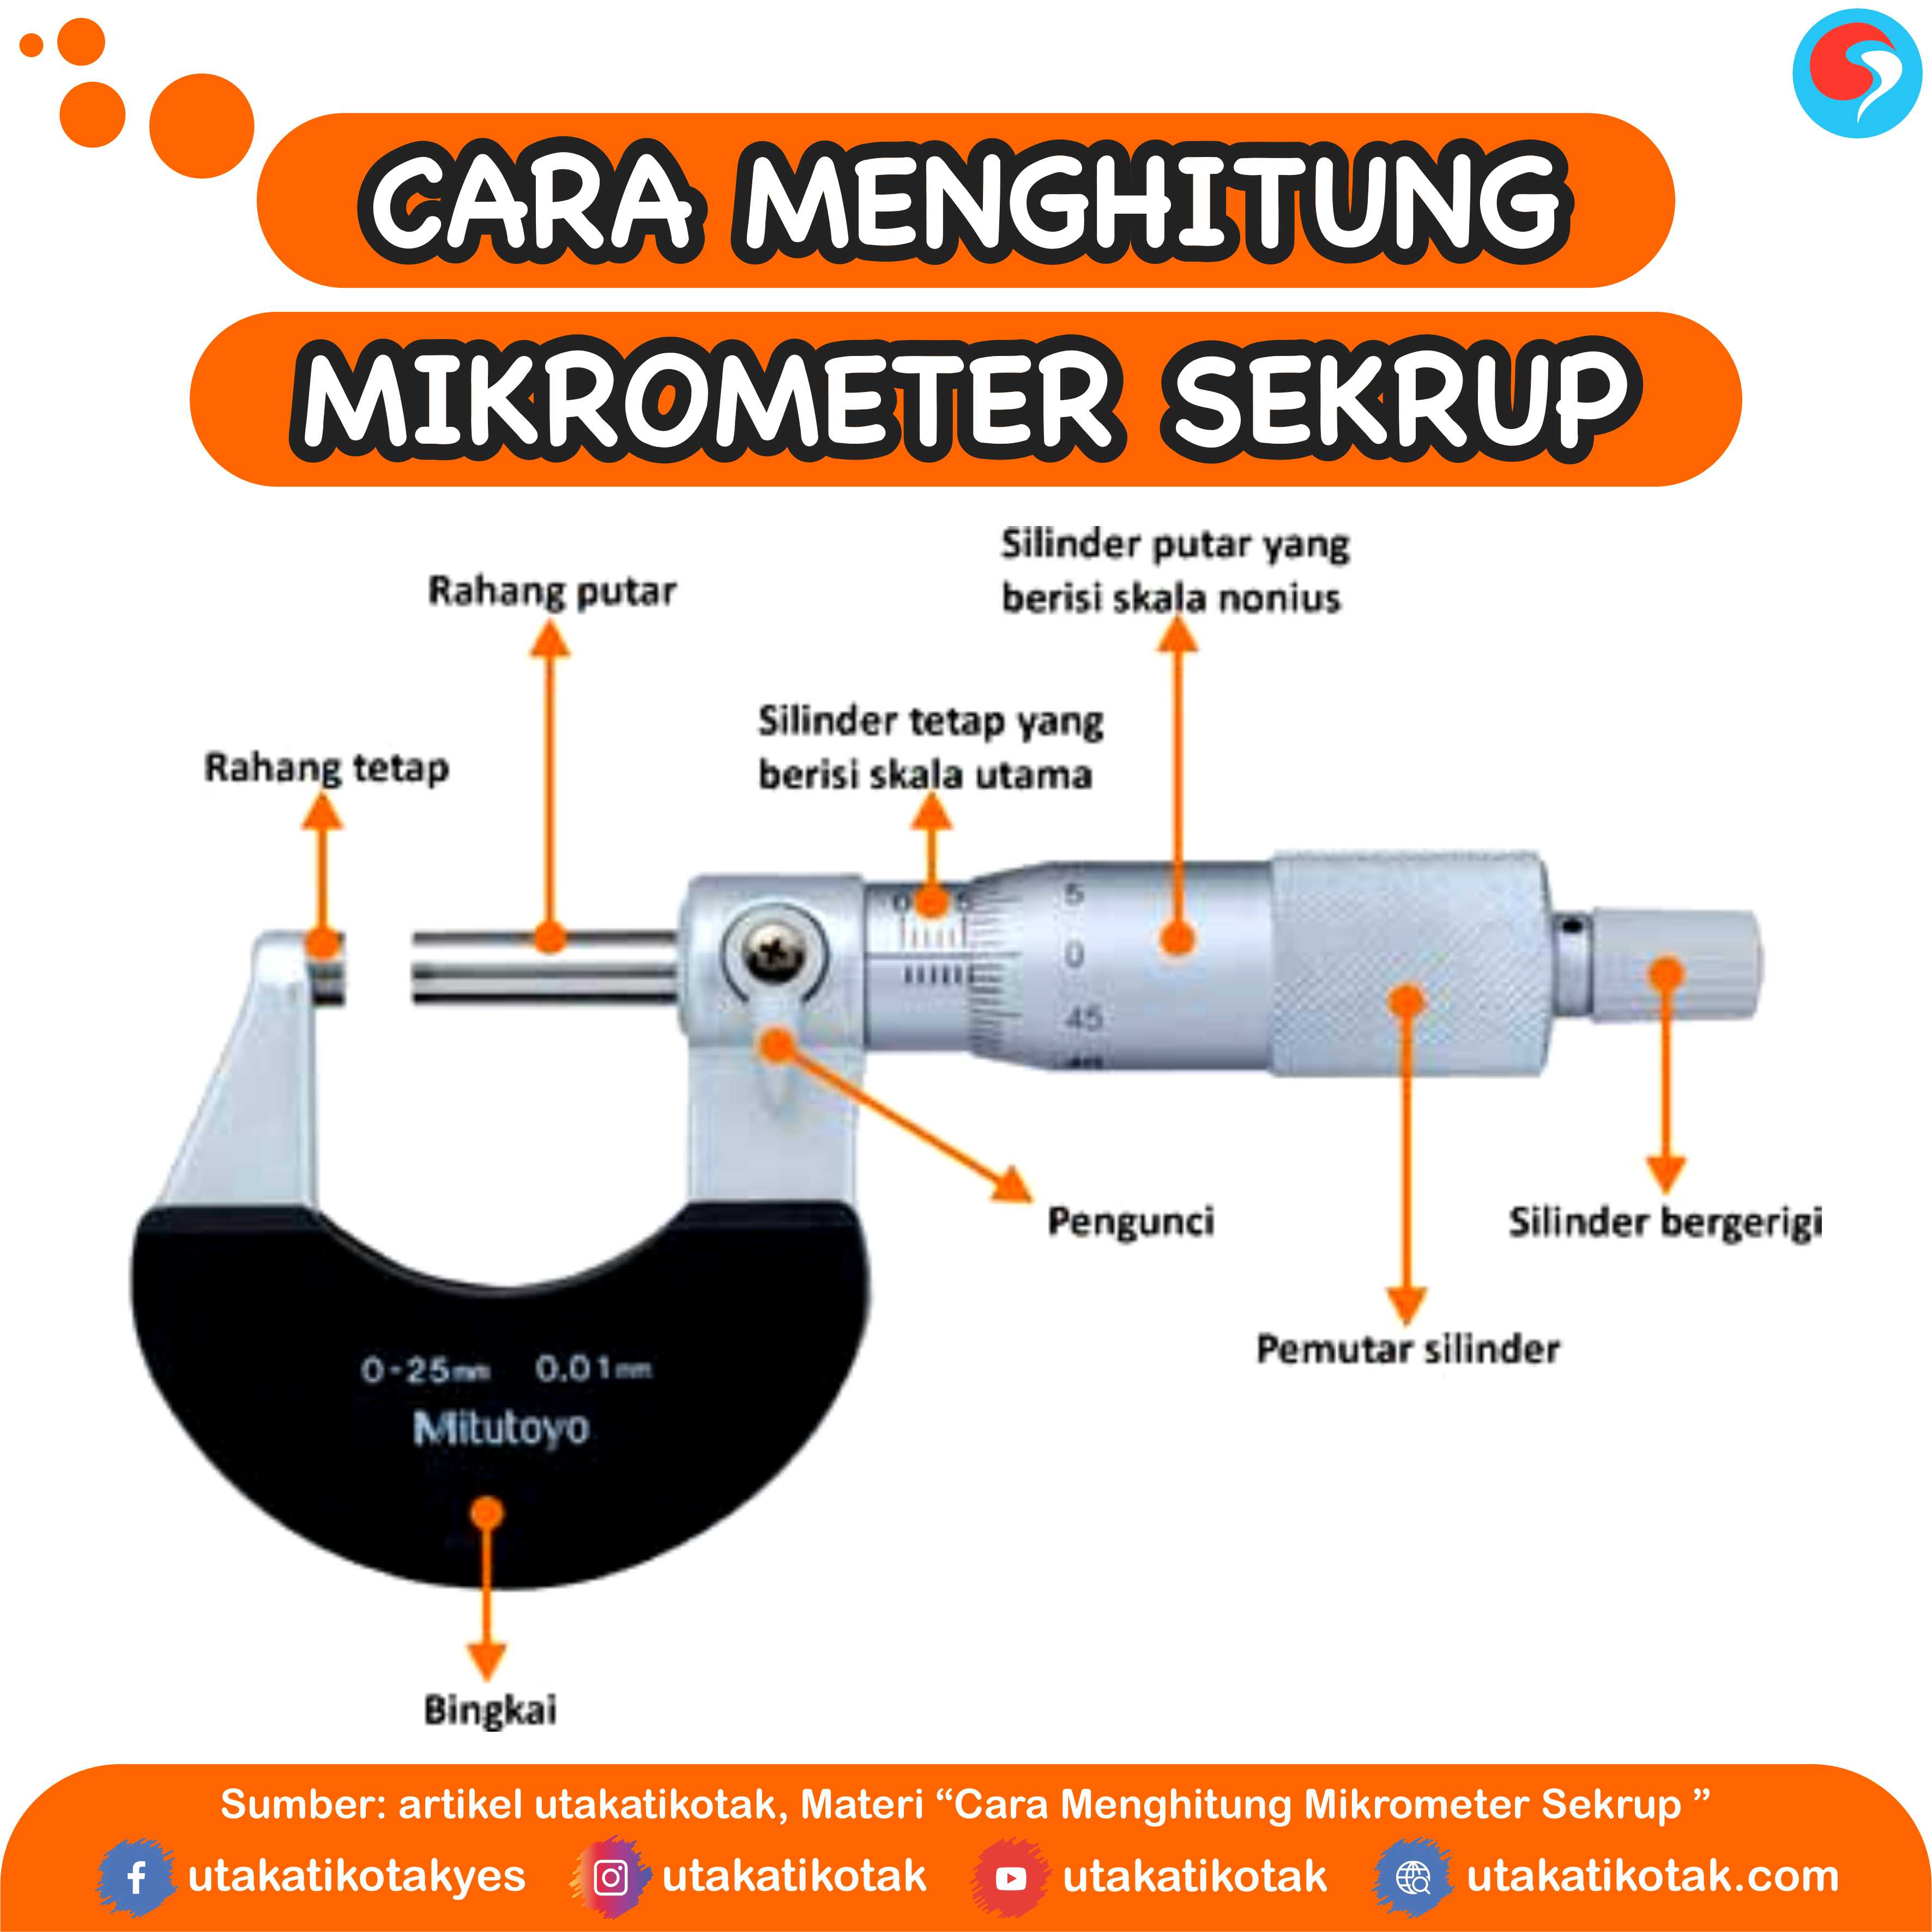 Cara Menghitung Mikrometer Sekrup